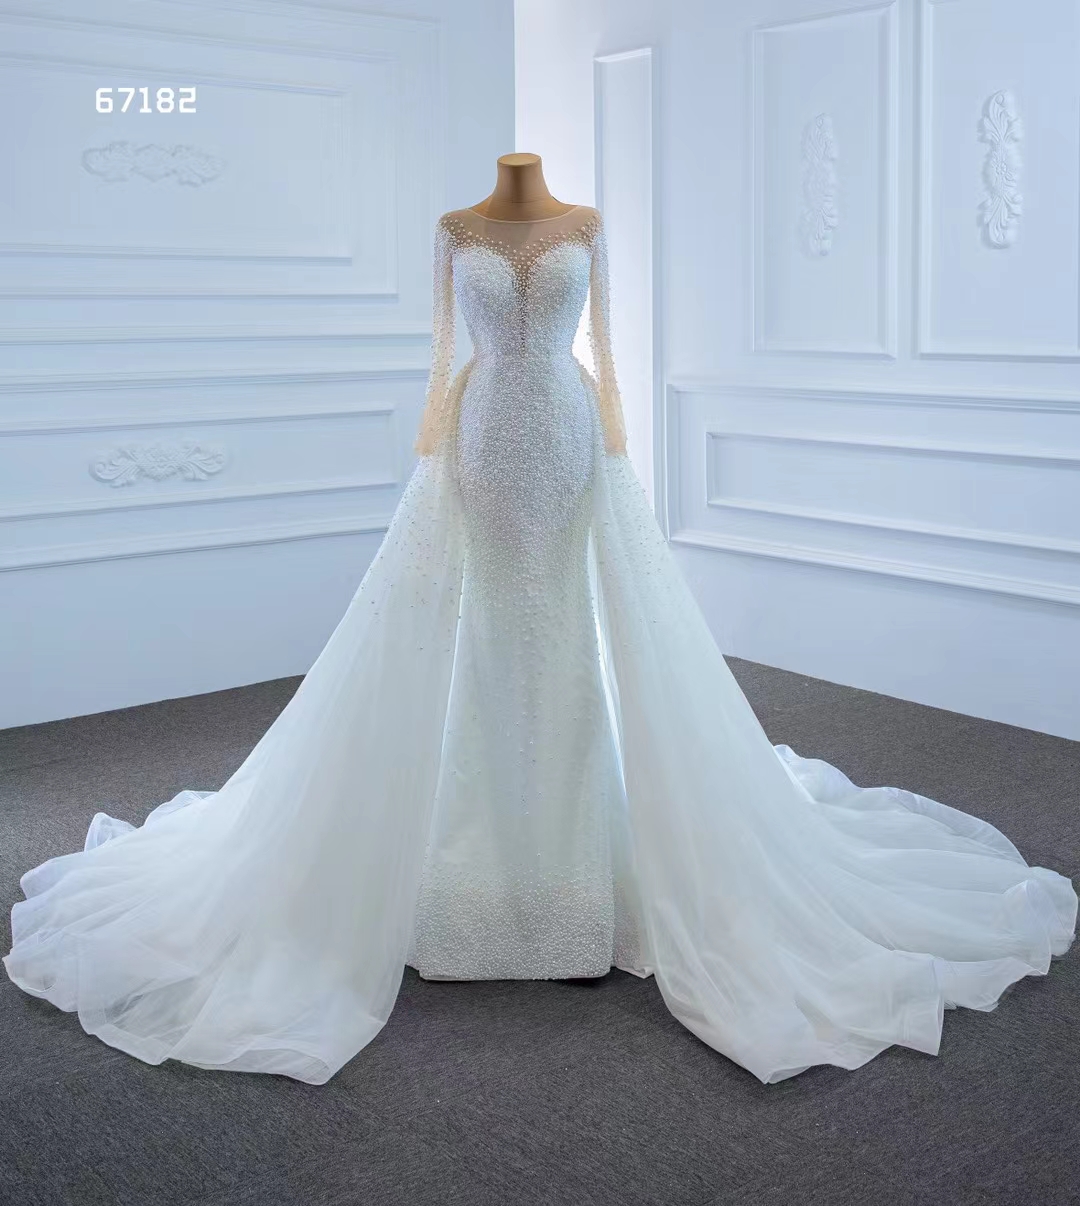 Prinsessan långärmad kristall spets sjöjungfru bröllopsklänning klänning de mariage elegant sm67182